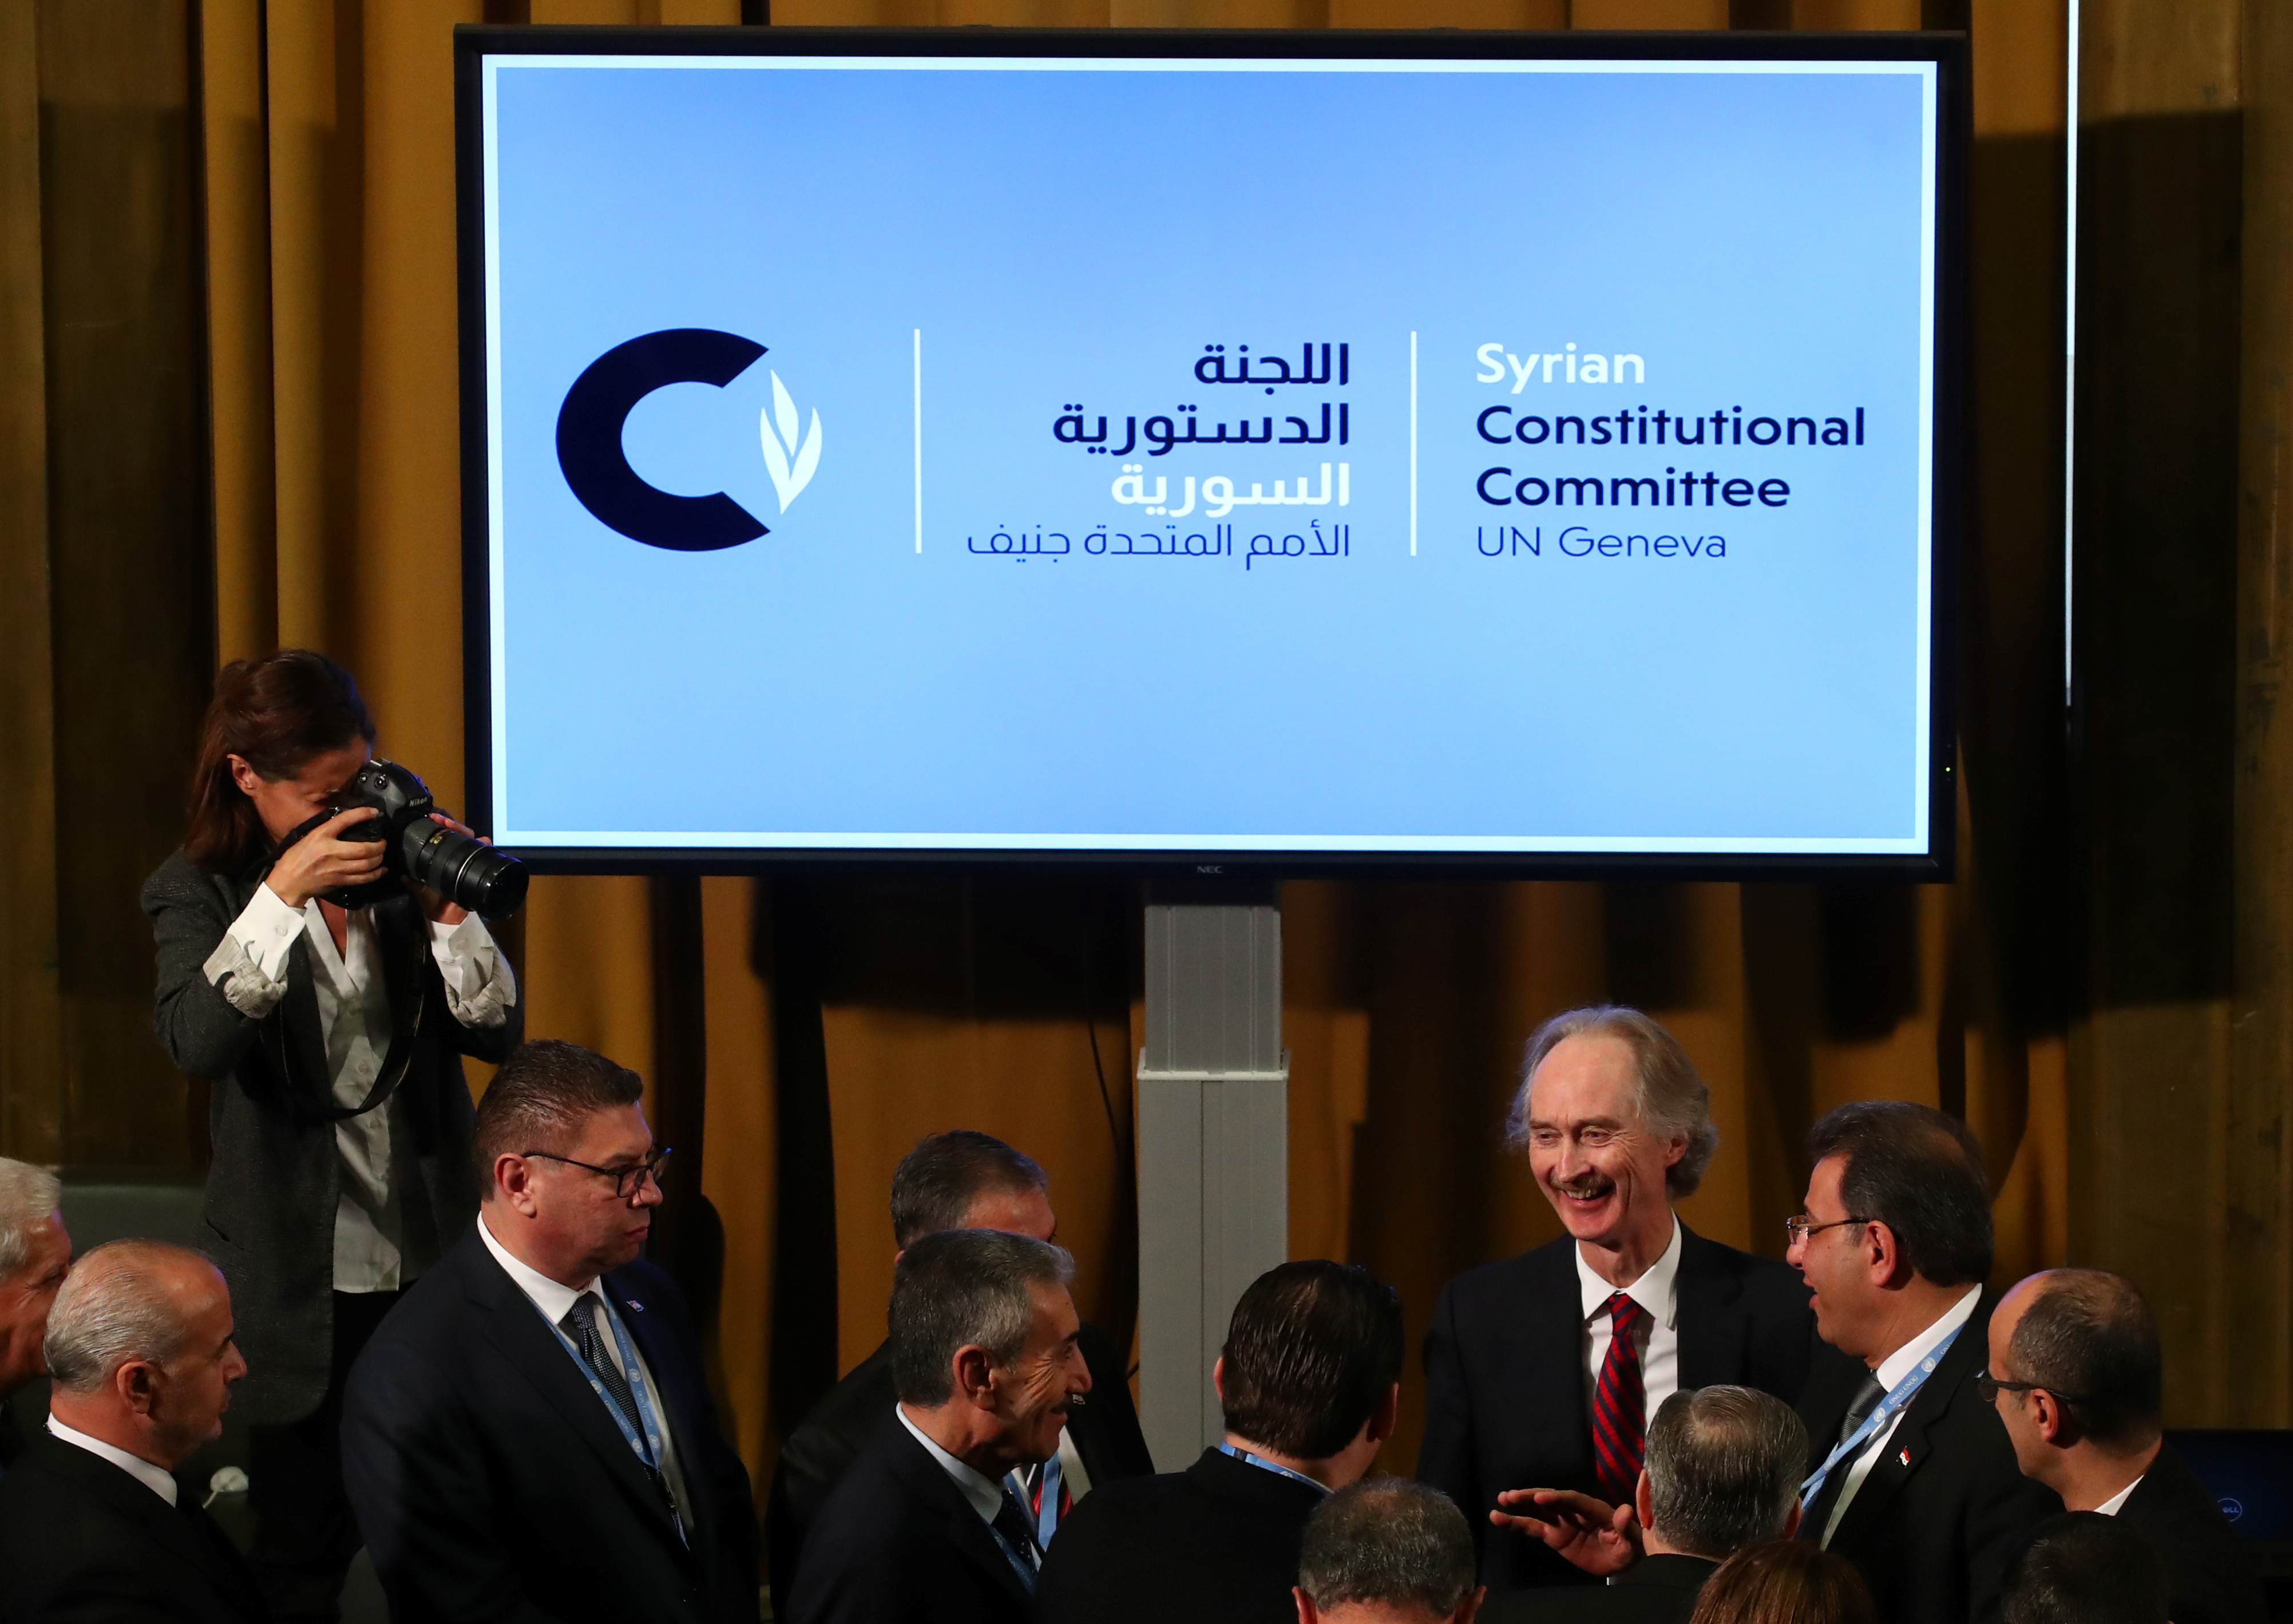 El enviado especial de la ONU para Siria aseguró que el rol de la organización internacional se limita a facilitar la labor del Comité de Discusión de la Constitución.